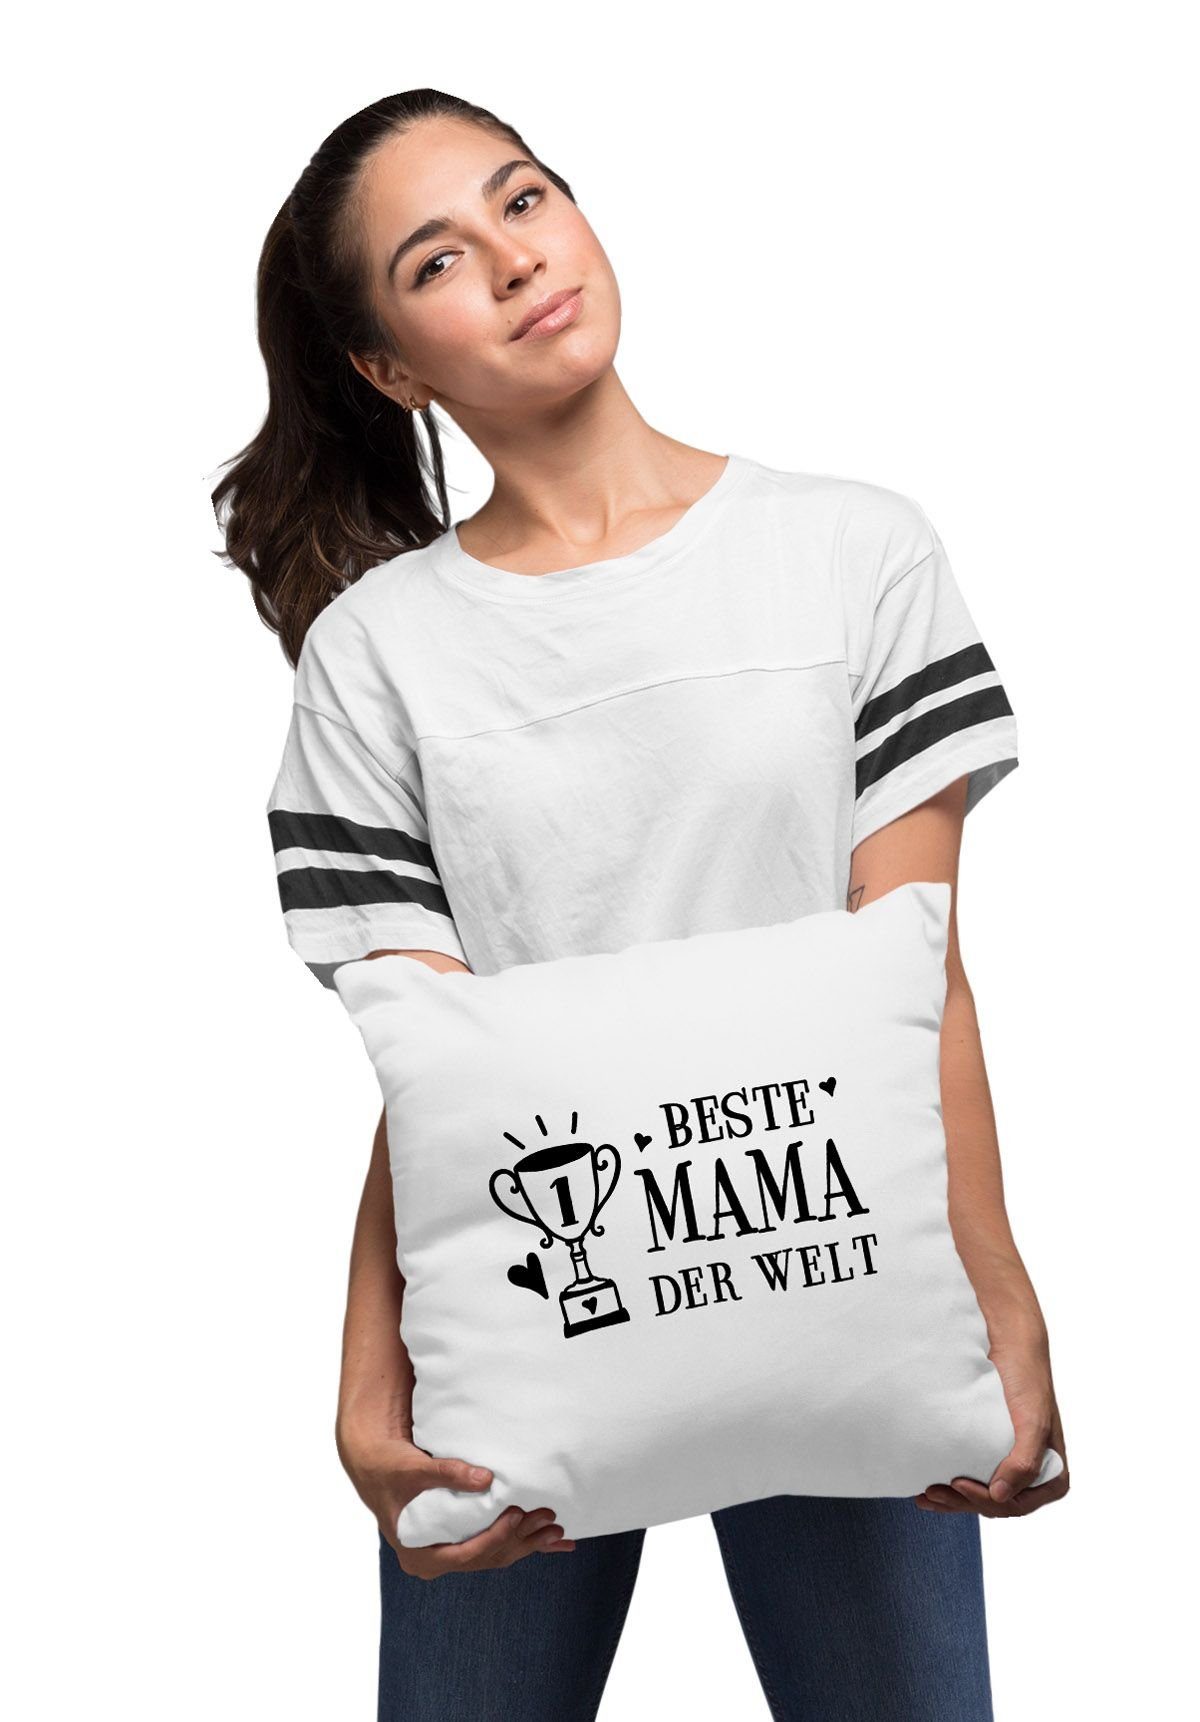 Dekokissen Welt Beste weiß Kissen-Bezug Muttertag MoonWorks® zum Baumwolle Geschenk Pokal der Kissen-Hülle Deko-Kissen MoonWorks Mama